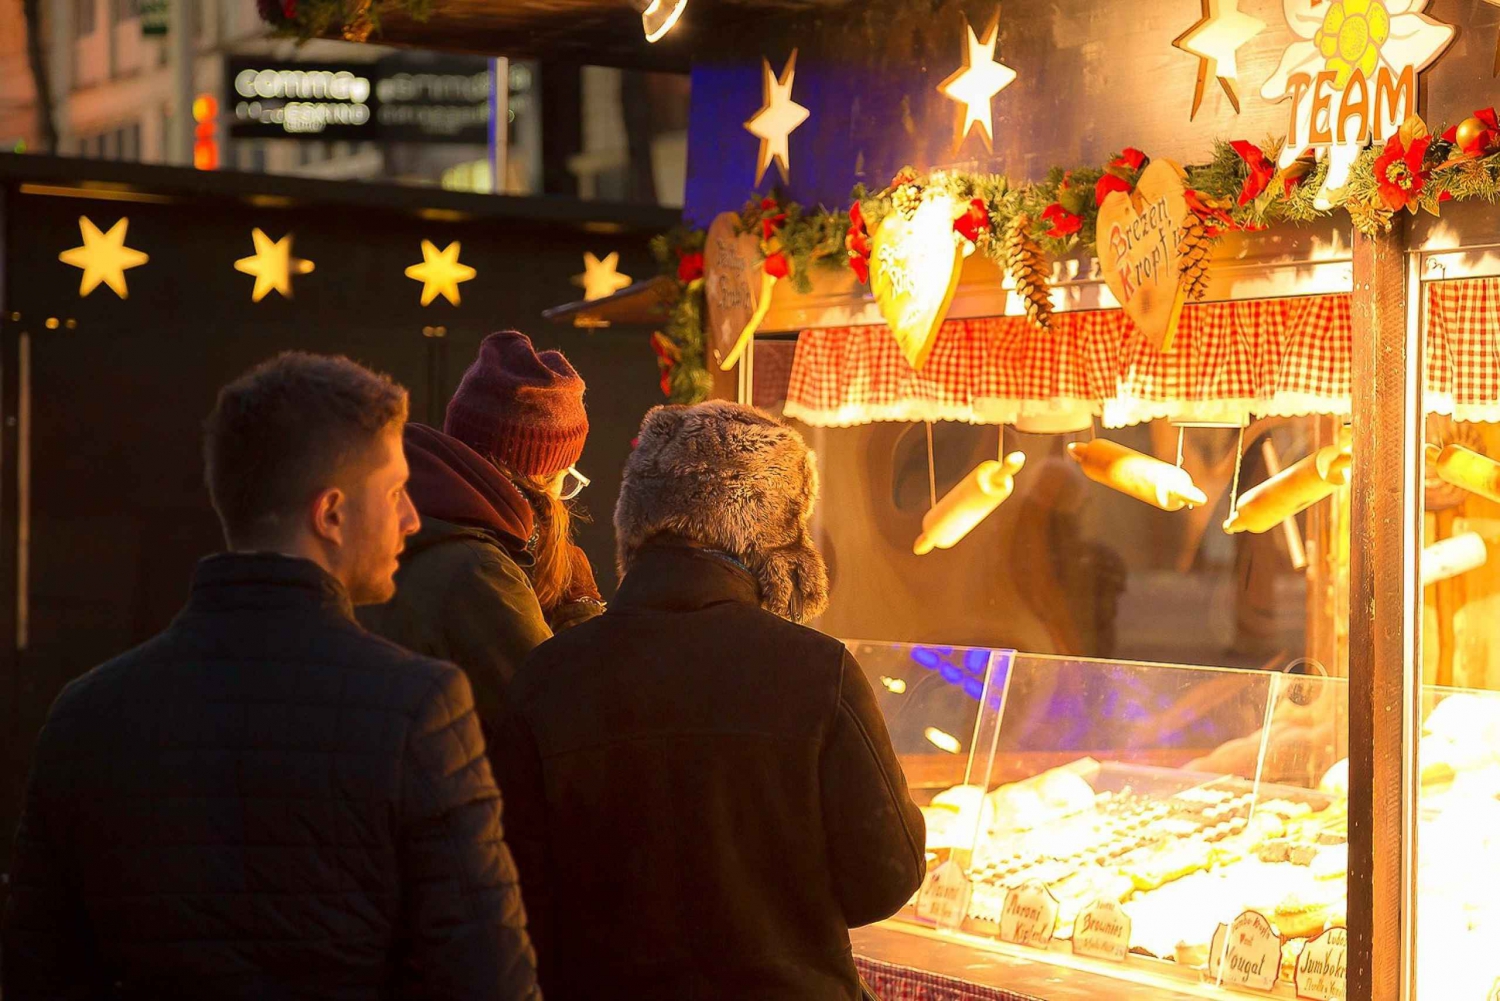 Wenen: tour langs kerstmarkten